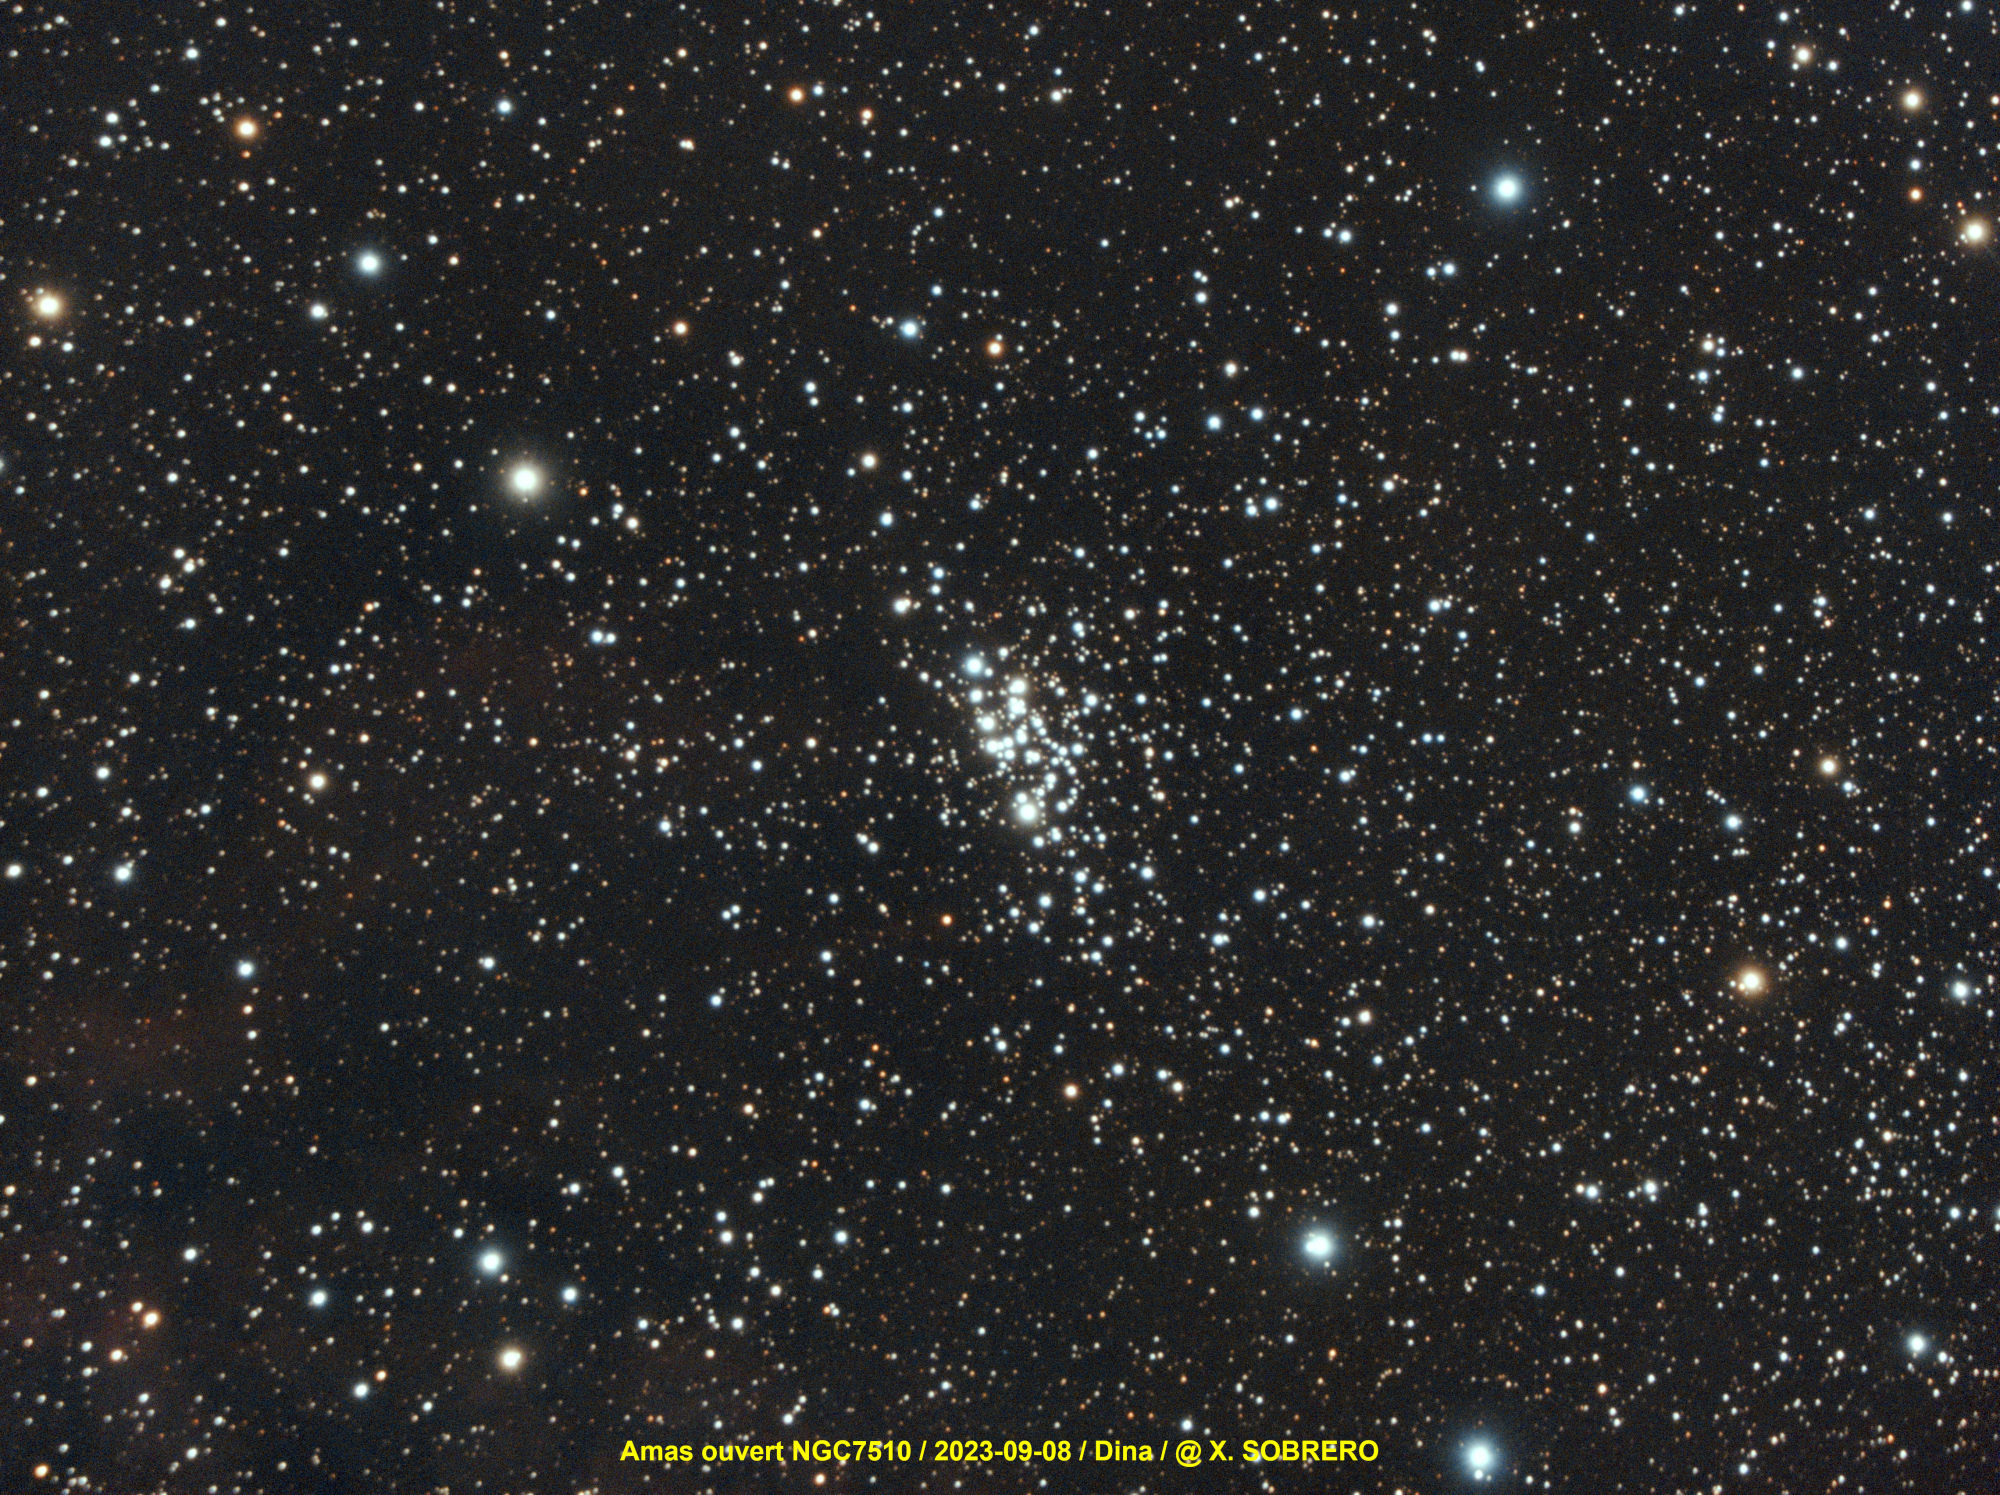 Amas_NGC7510_2023-09-08_Dina.thumb.jpg.60d018c69f8be215ad3c7e28fc664025.jpg